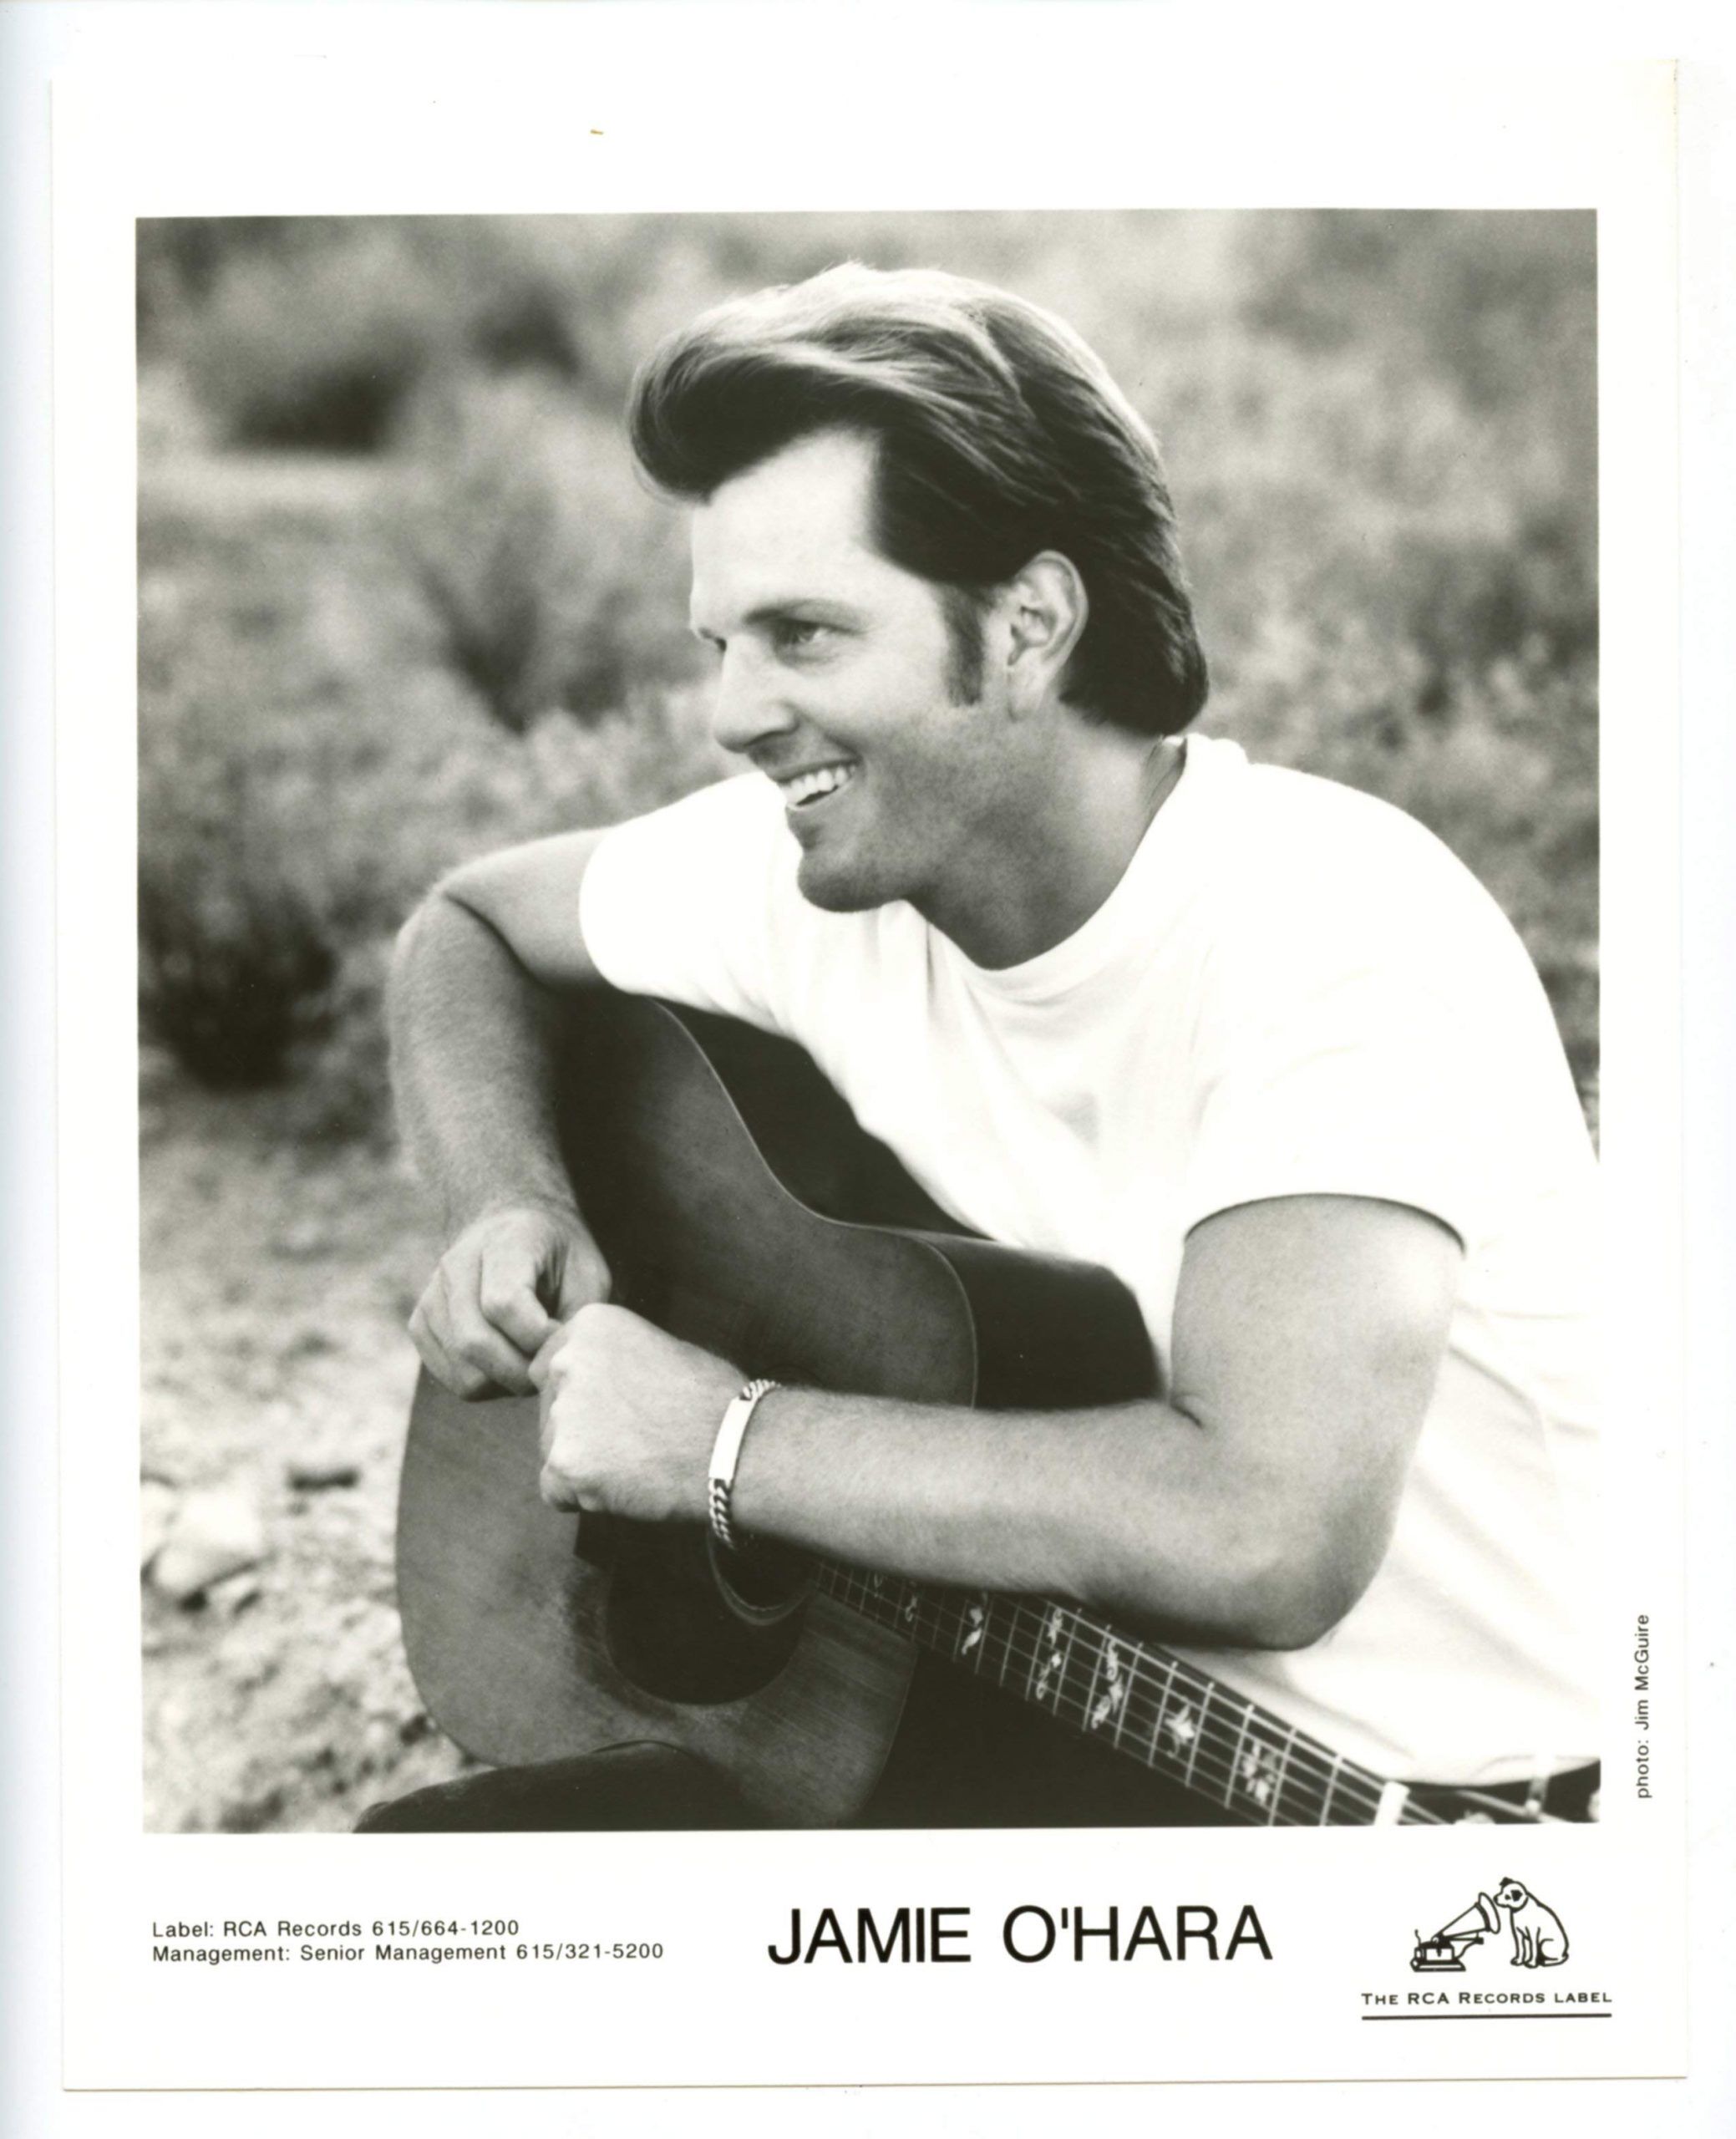 Jamie O'Hara Photo 1990s RCA Records